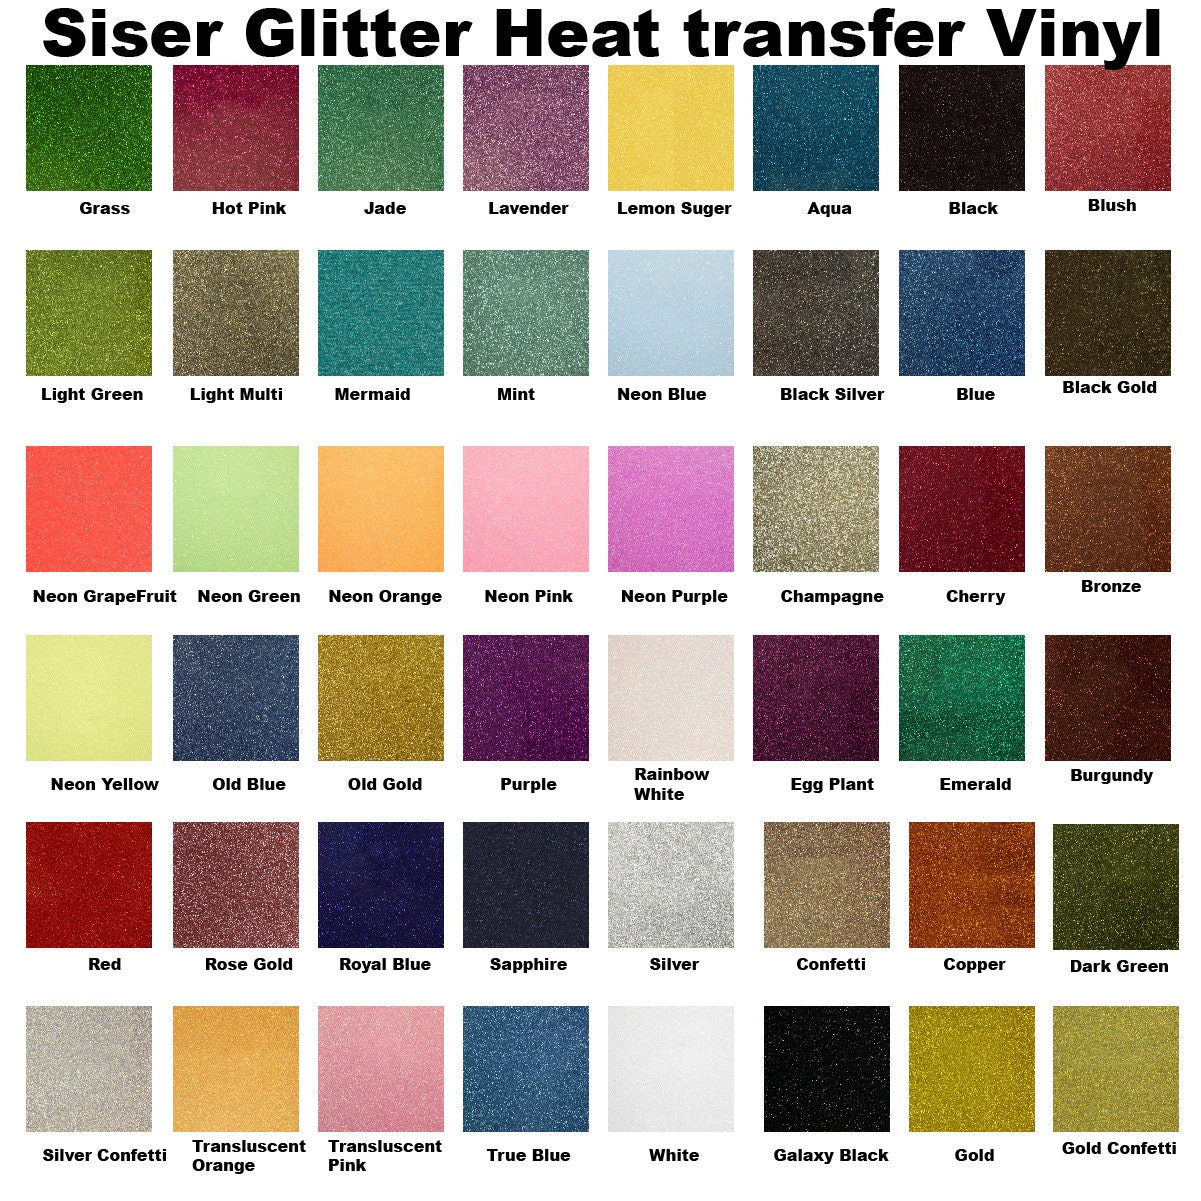 SISER GLITTER HEAT TRANSFER VINYL, 3 SHEETS, 20x12, 3 COLORS